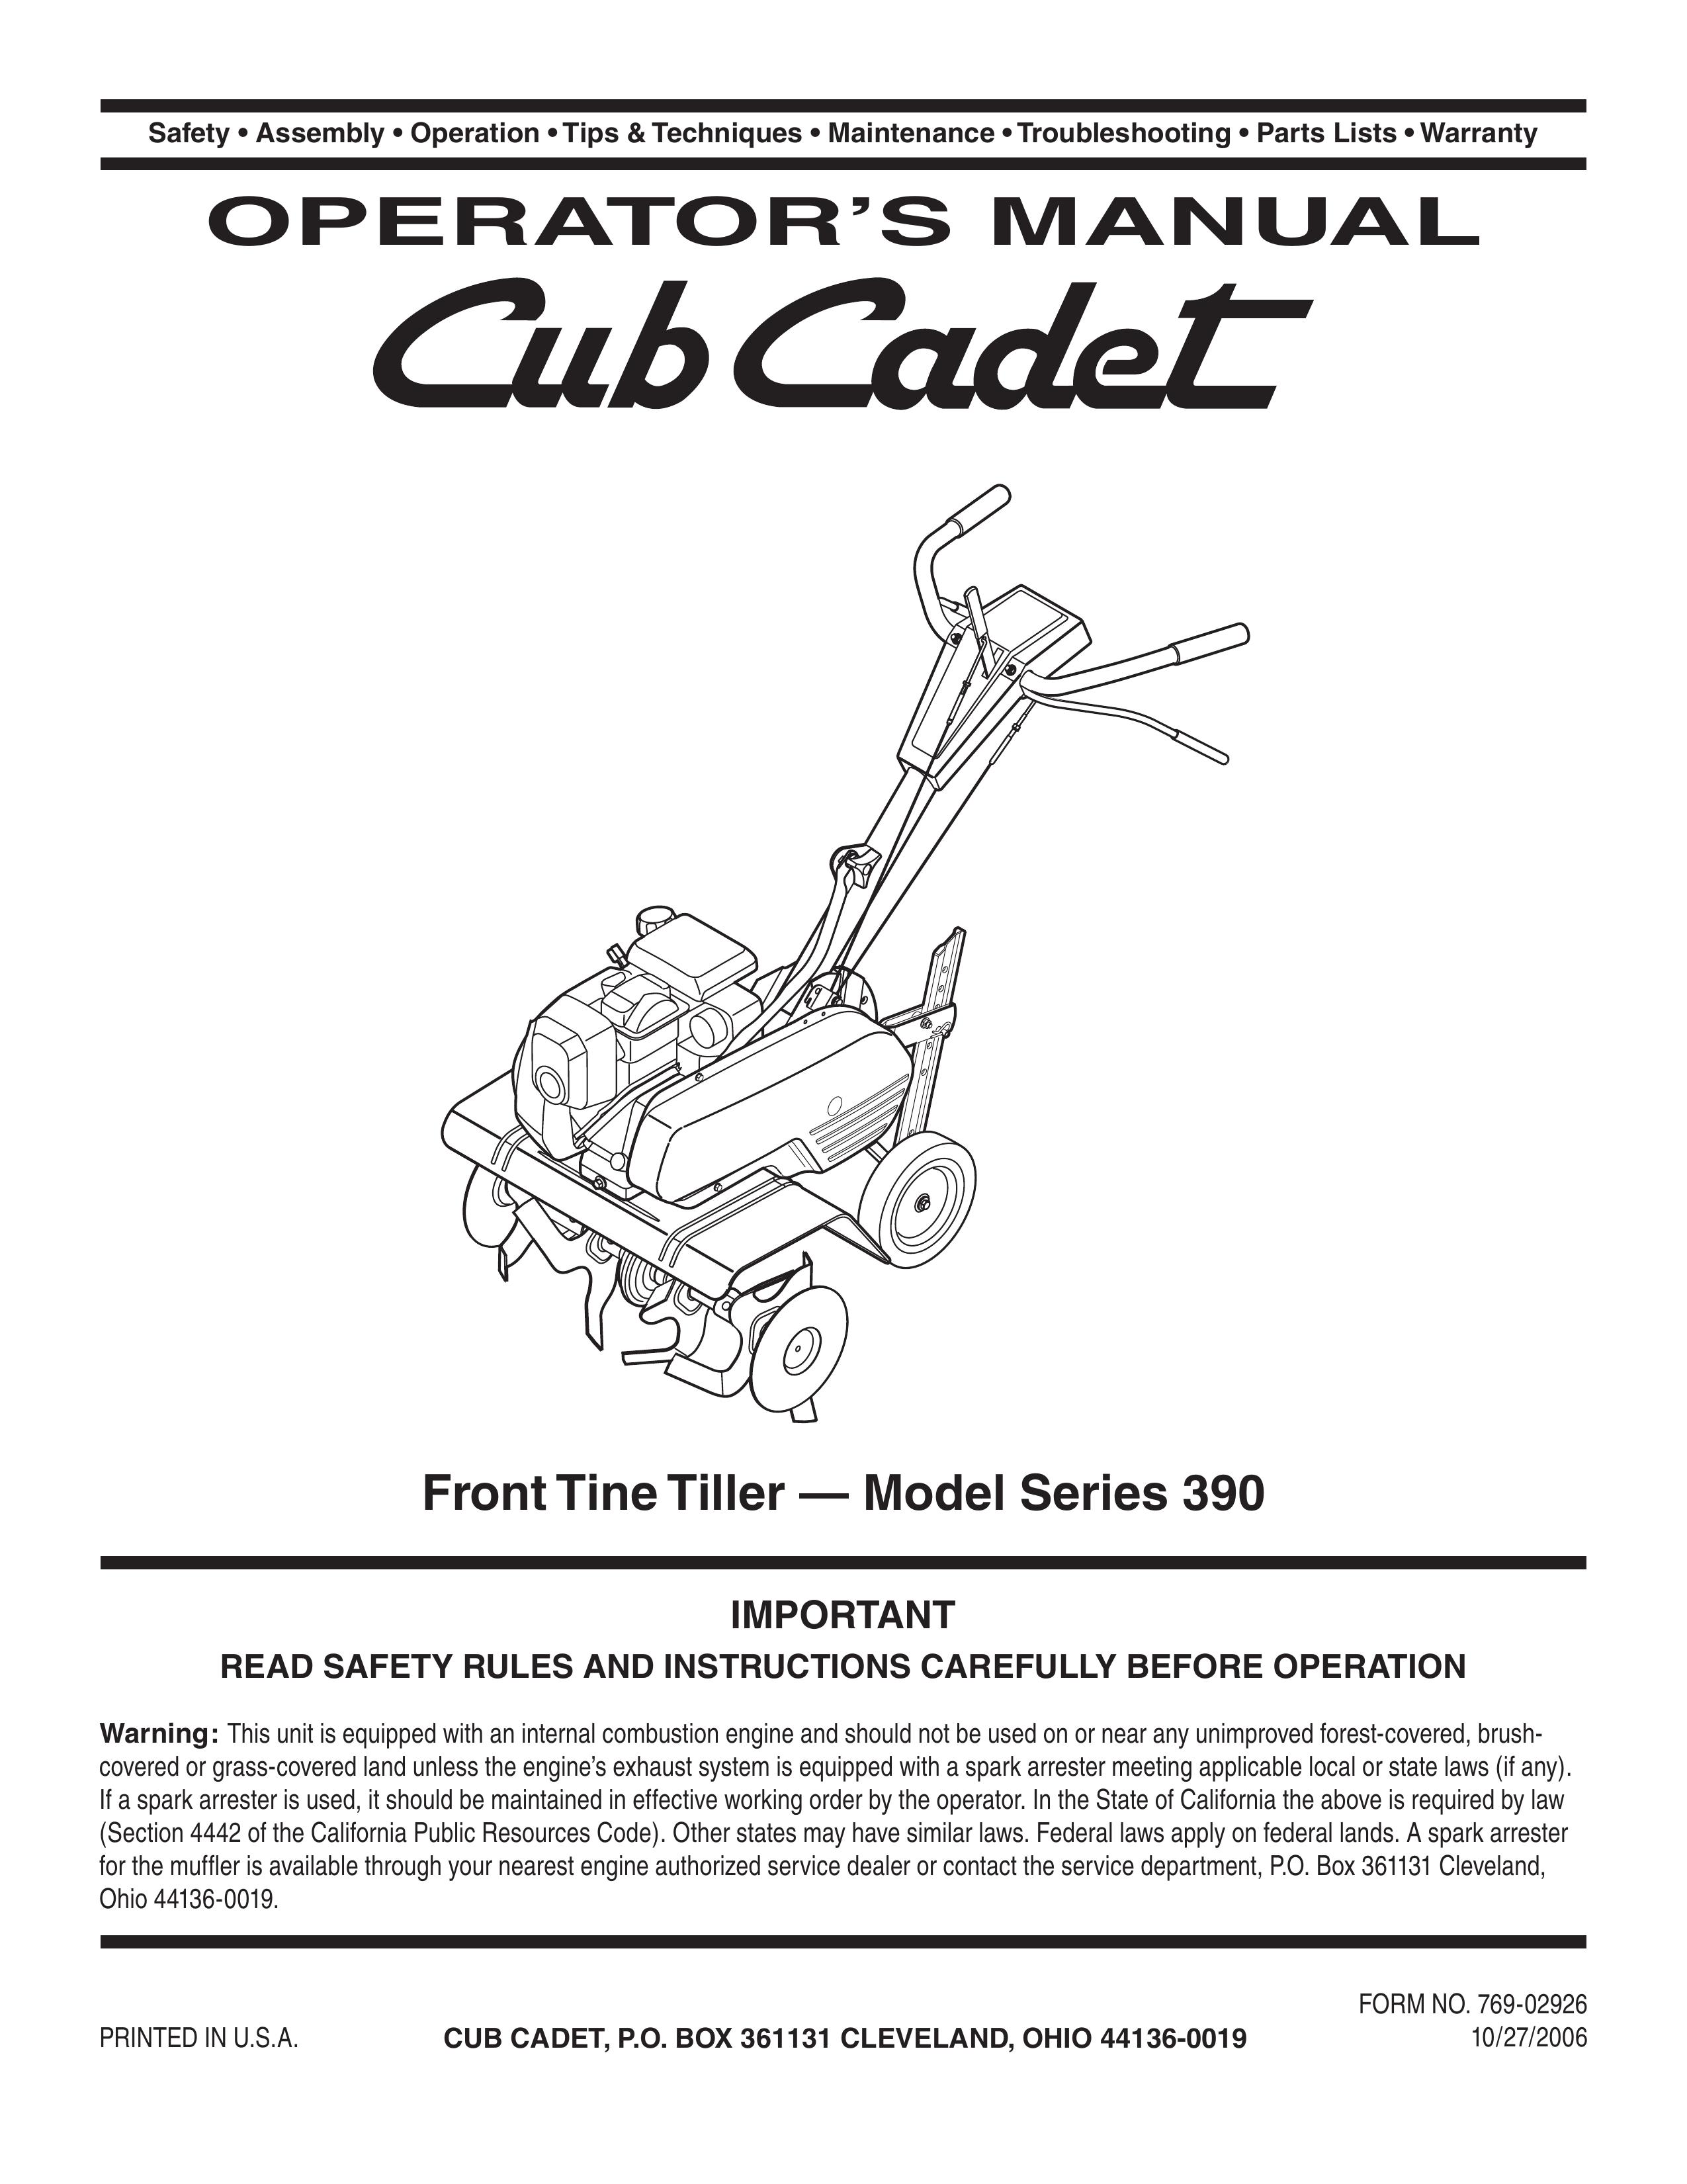 Cub Cadet Series 390 Tiller User Manual